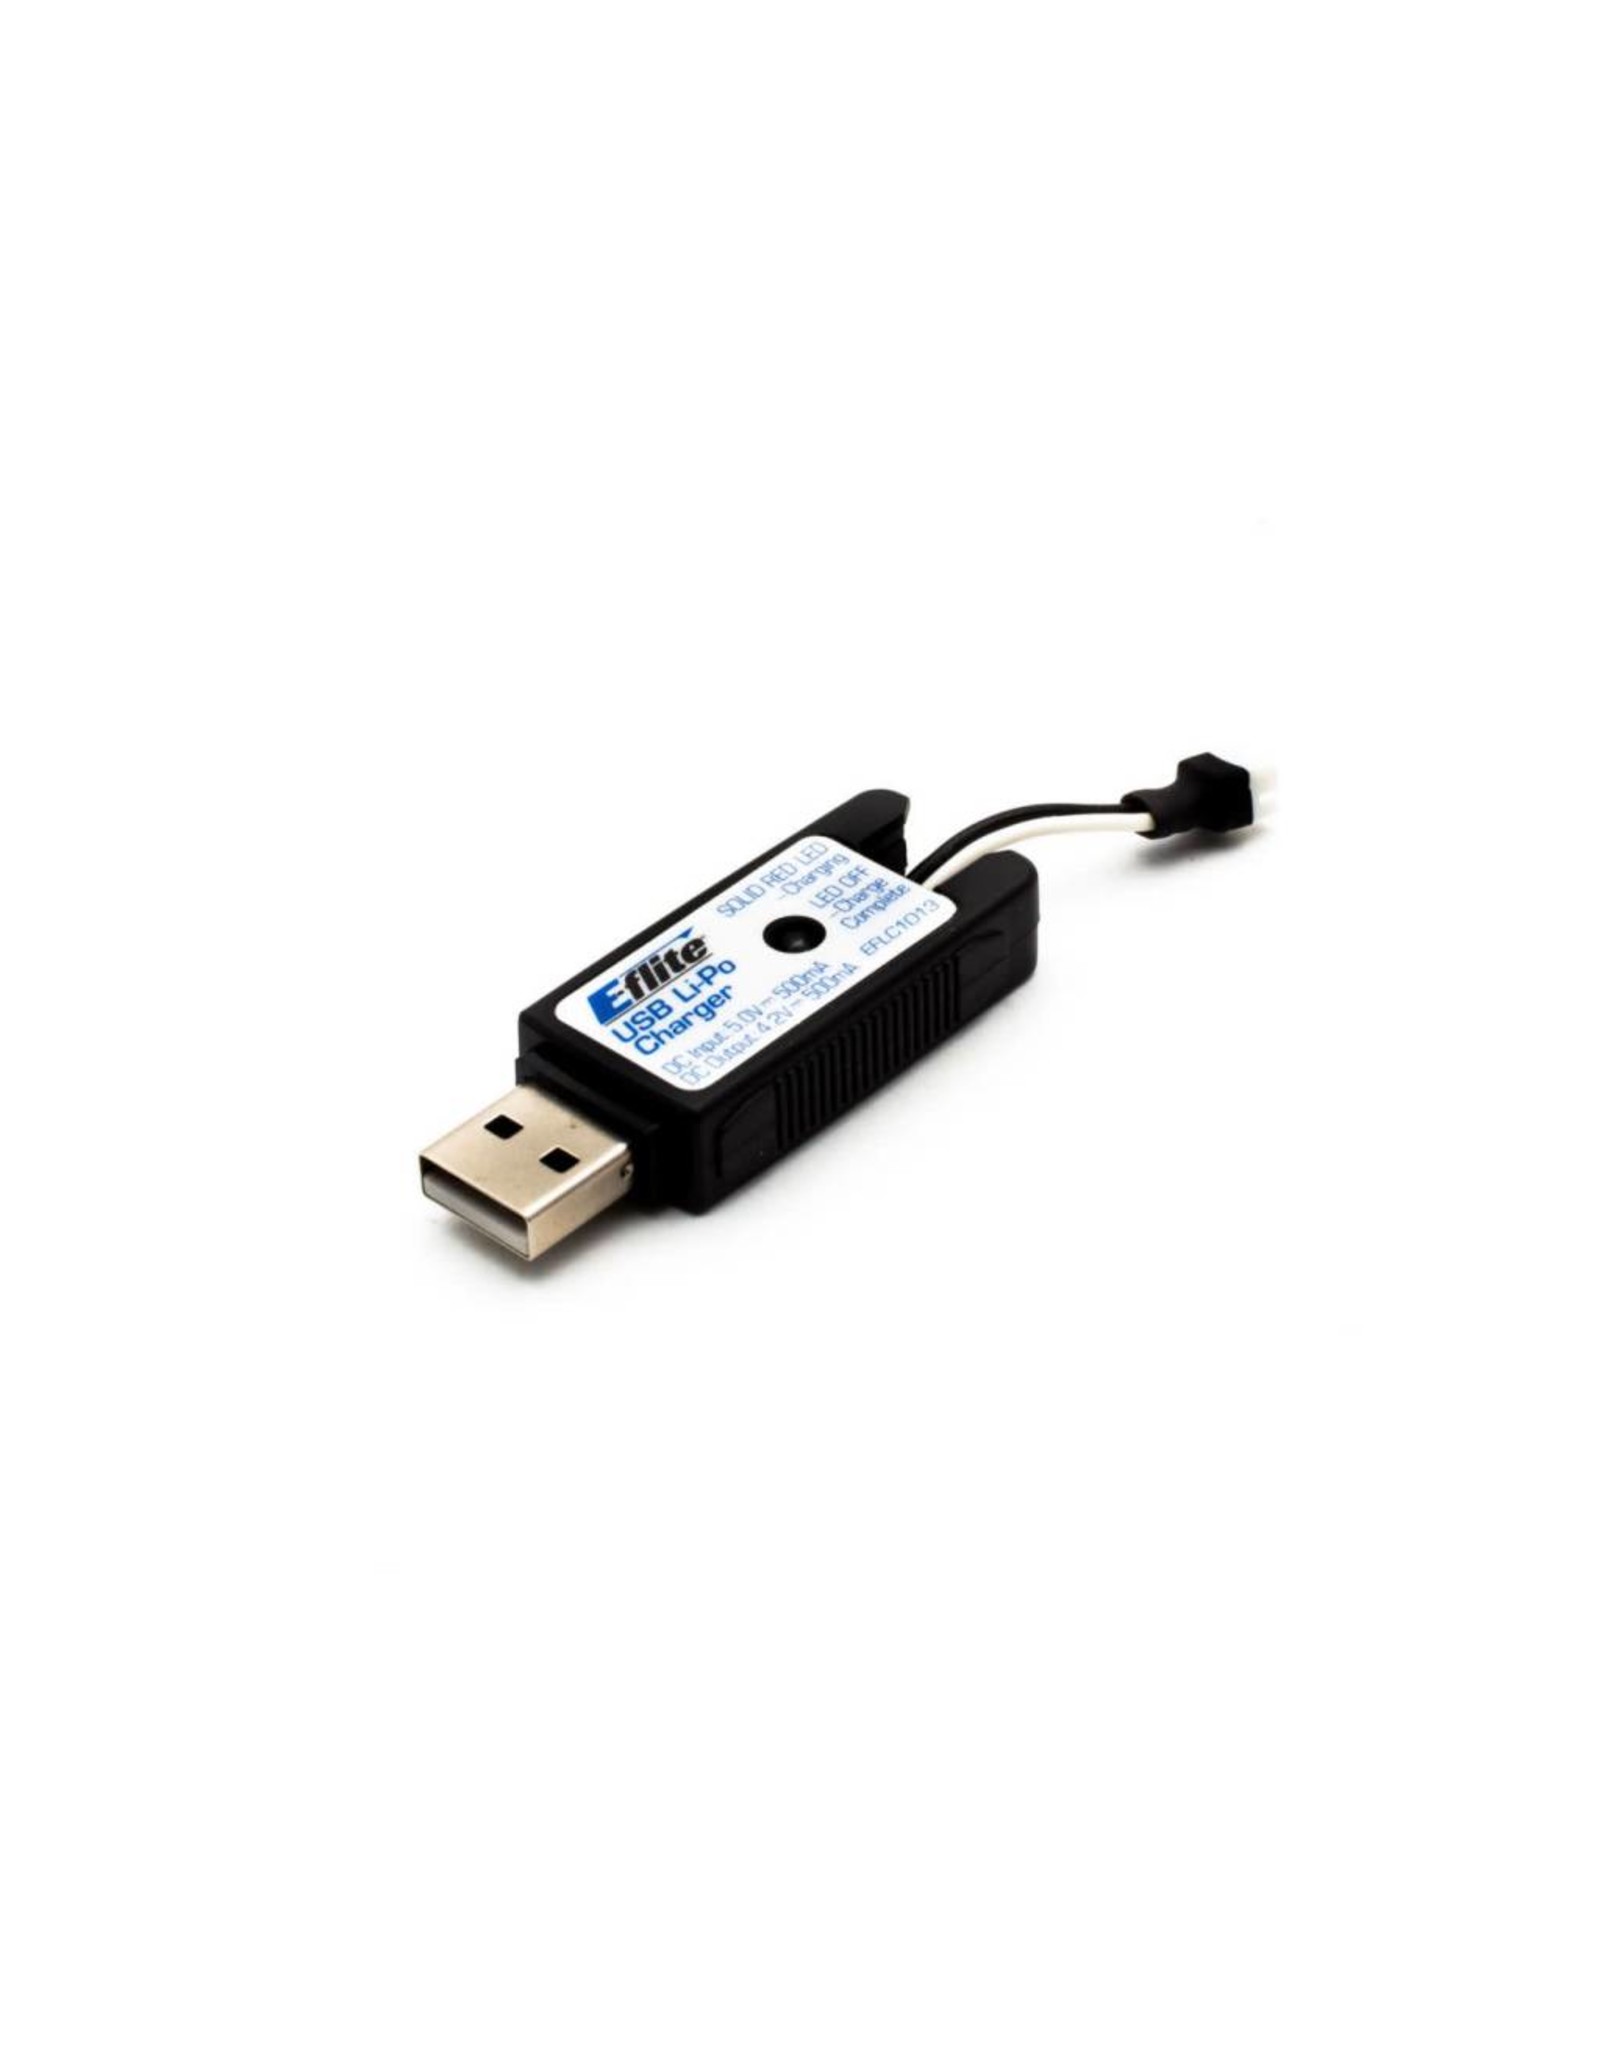 Eflite 1S USB Li-Po Charger, 500mAh High Current UMX  (EFLC1013)